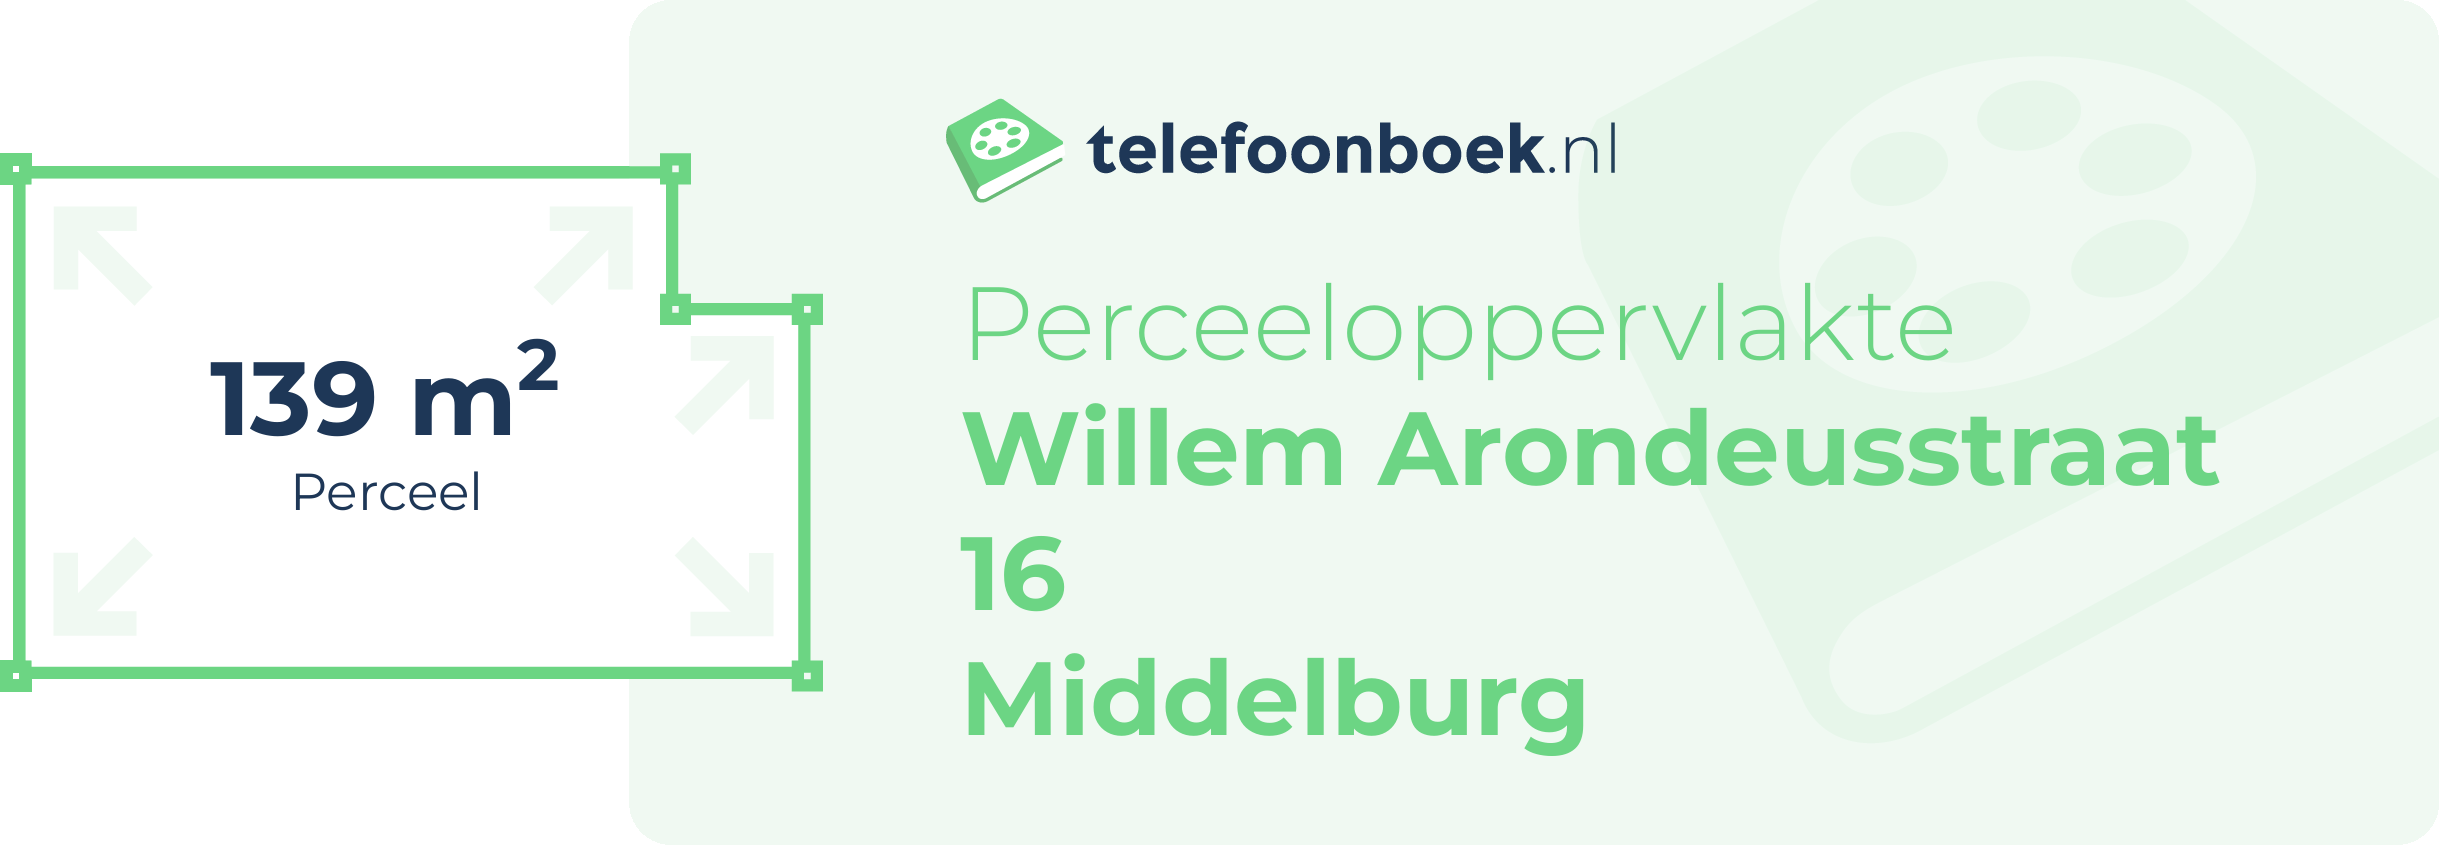 Perceeloppervlakte Willem Arondeusstraat 16 Middelburg